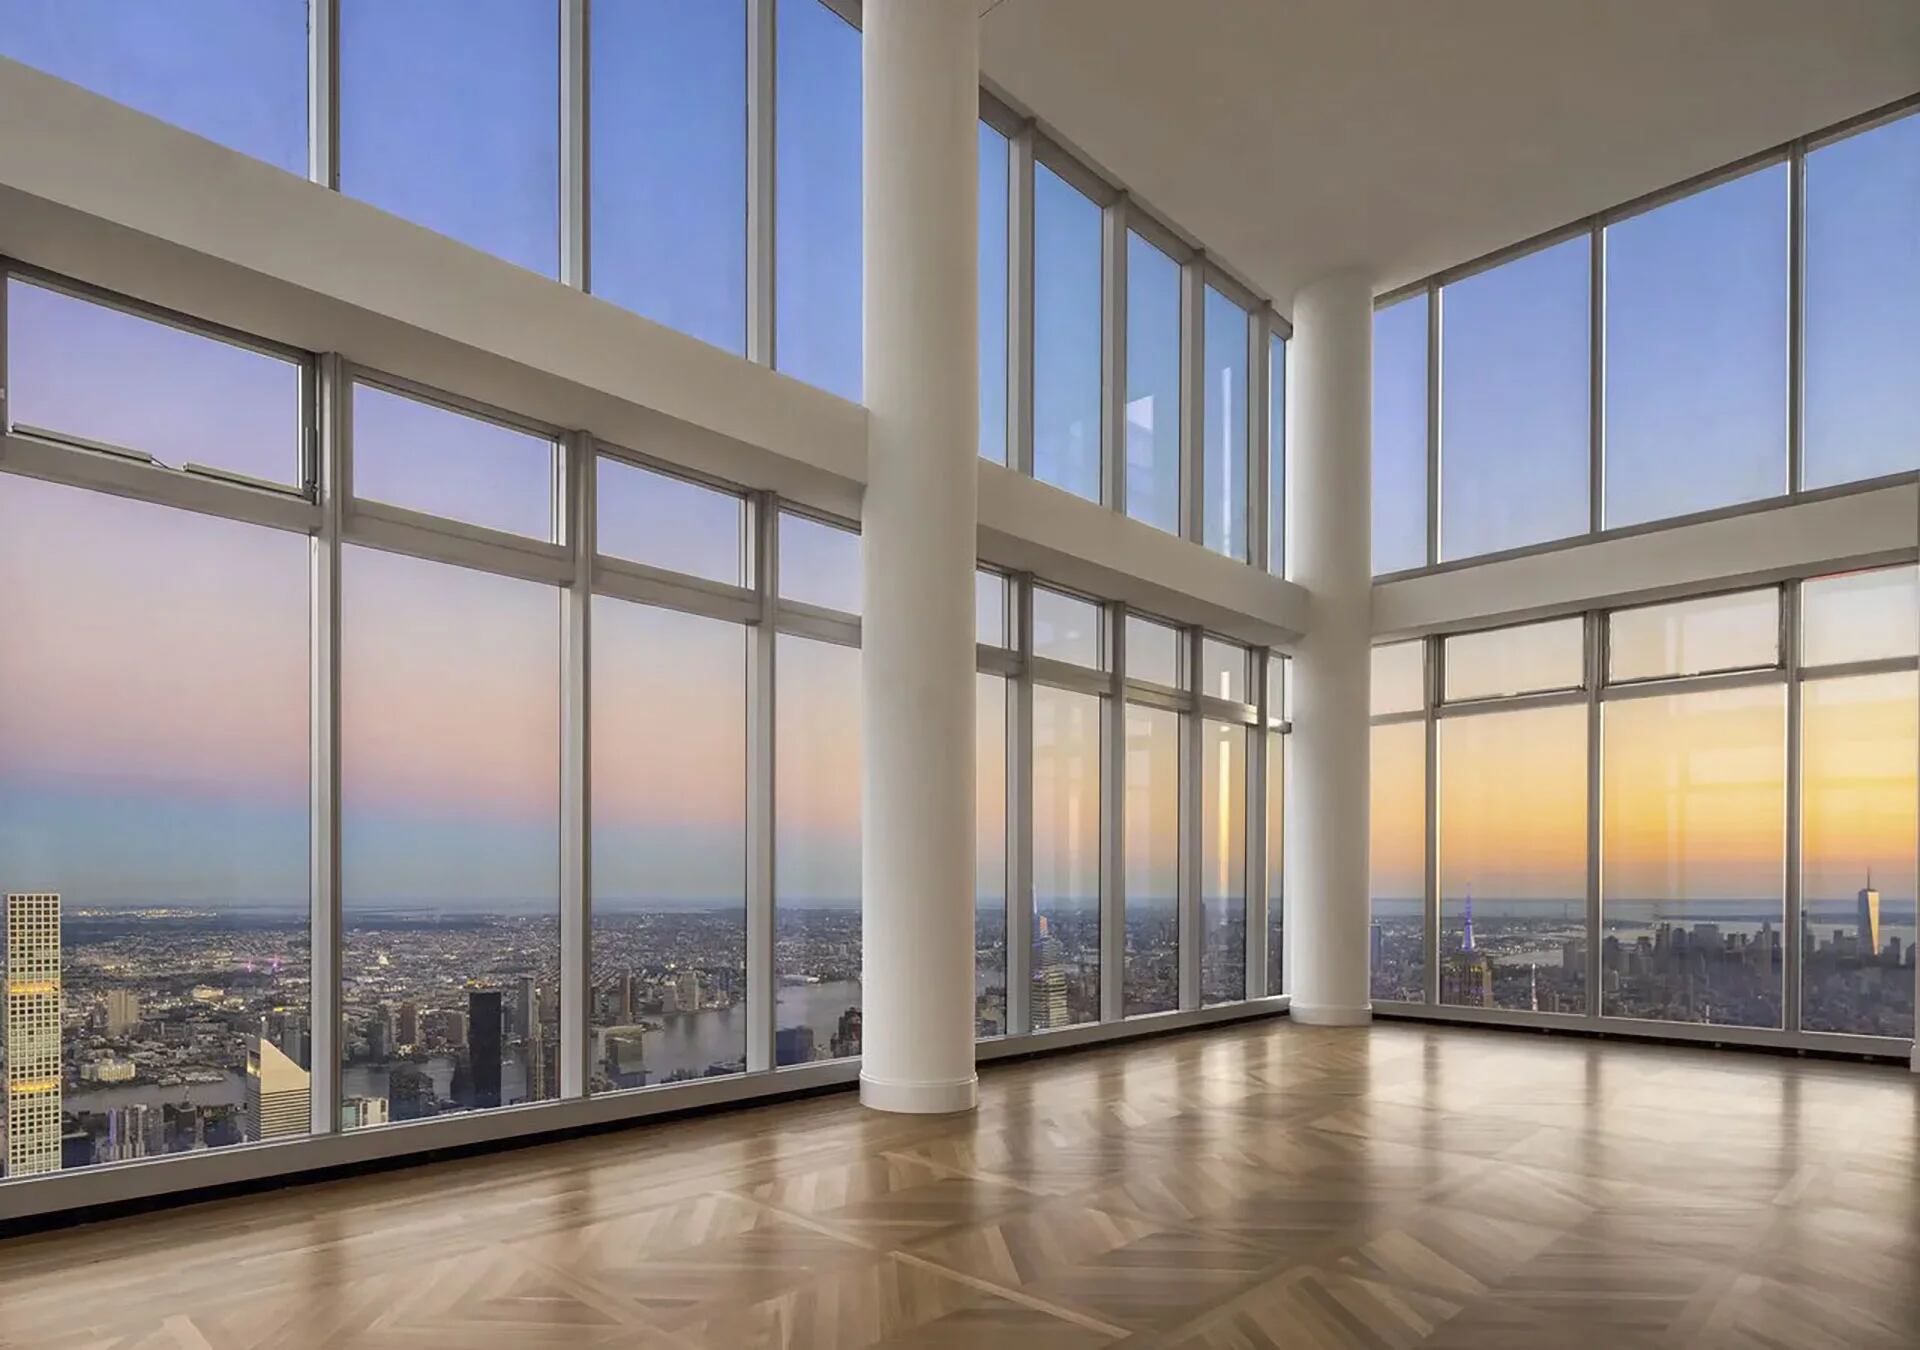 Pisos de madera ultra resistentes y blindex en el penthouse más alto del mundo que se vende en Nueva York